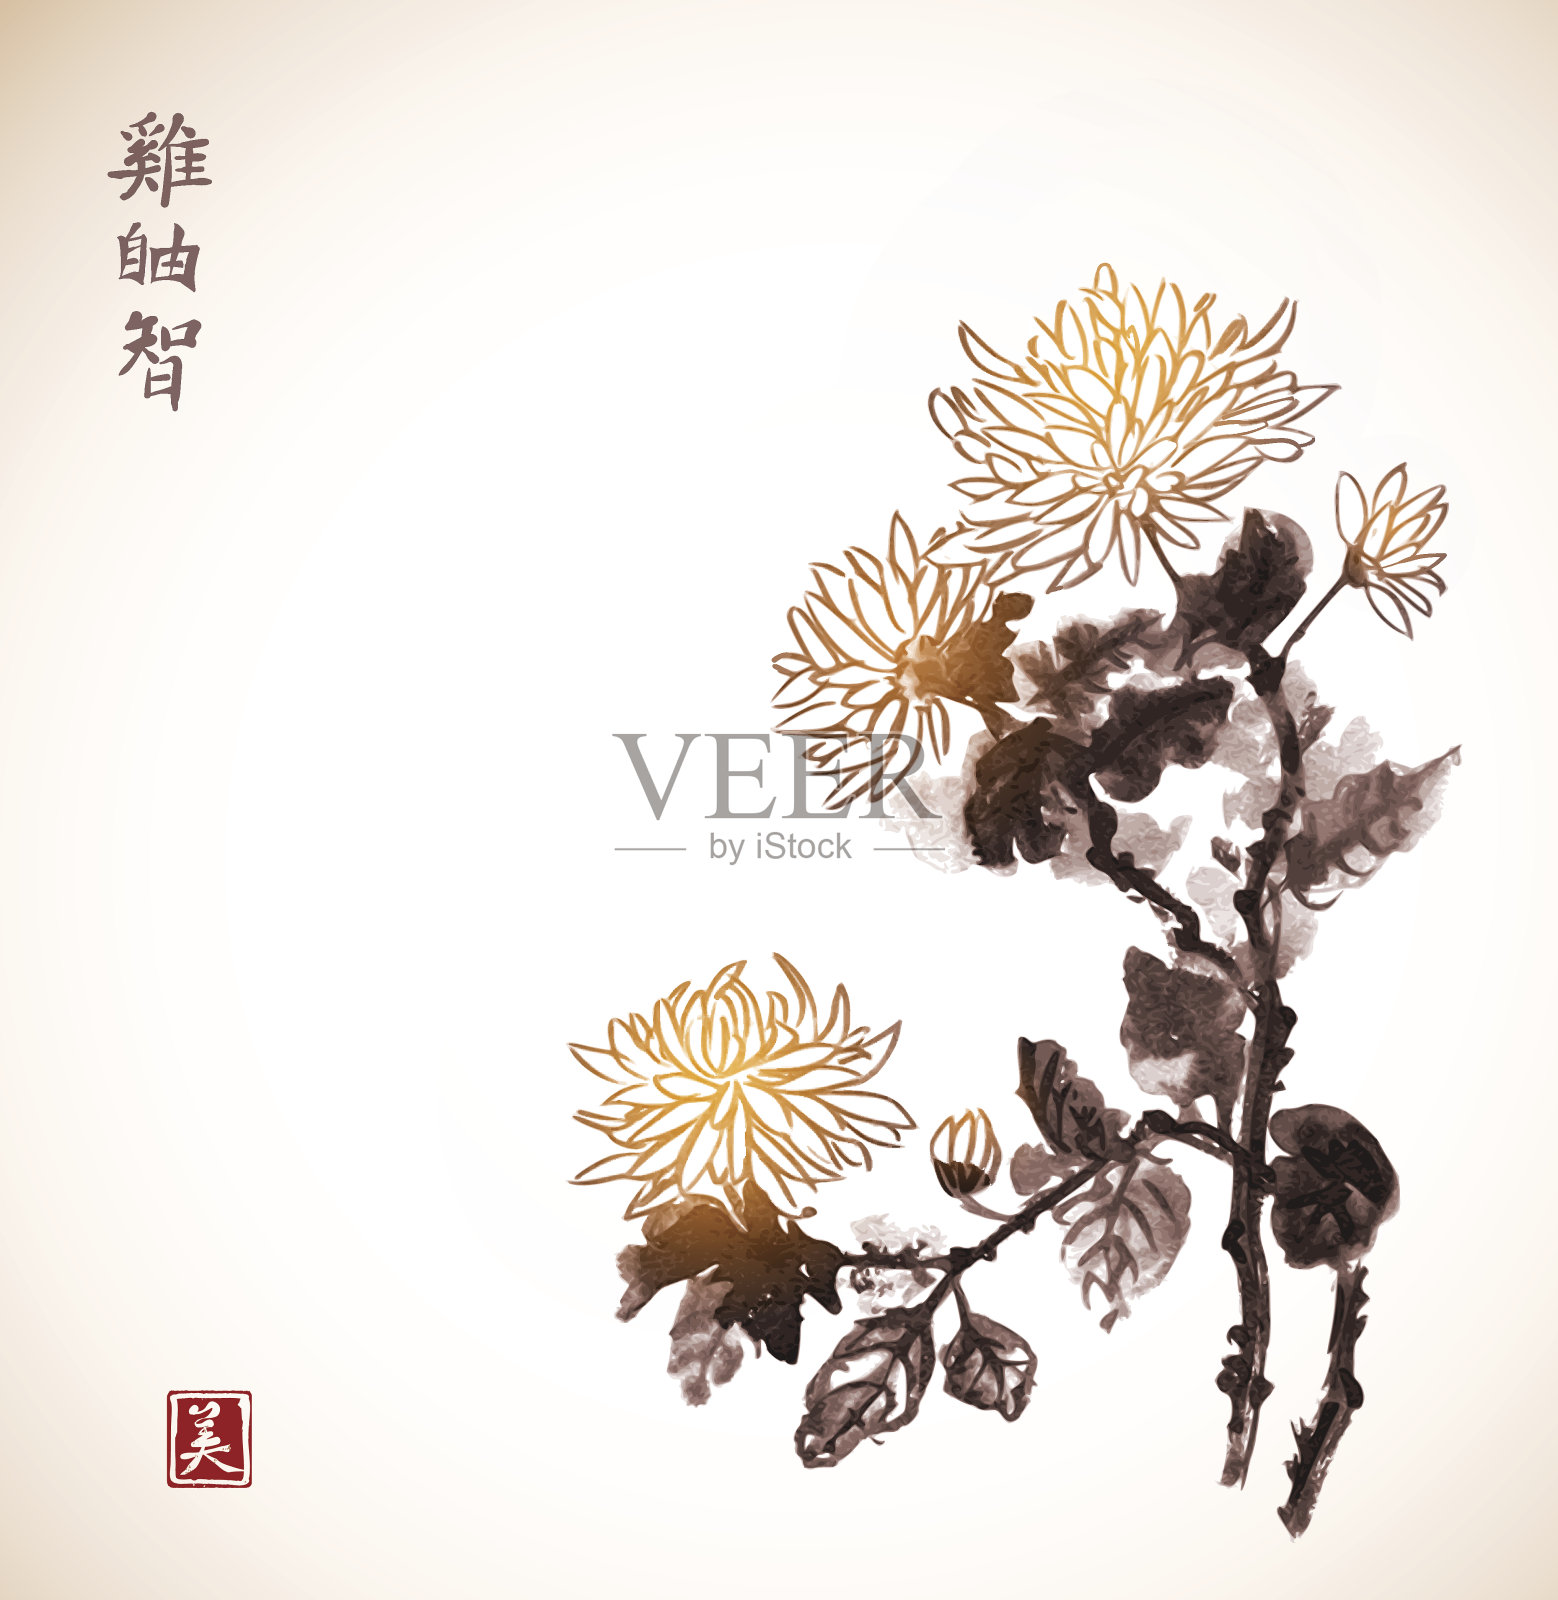 复古风格的菊花。传统东方水墨画背景图片素材